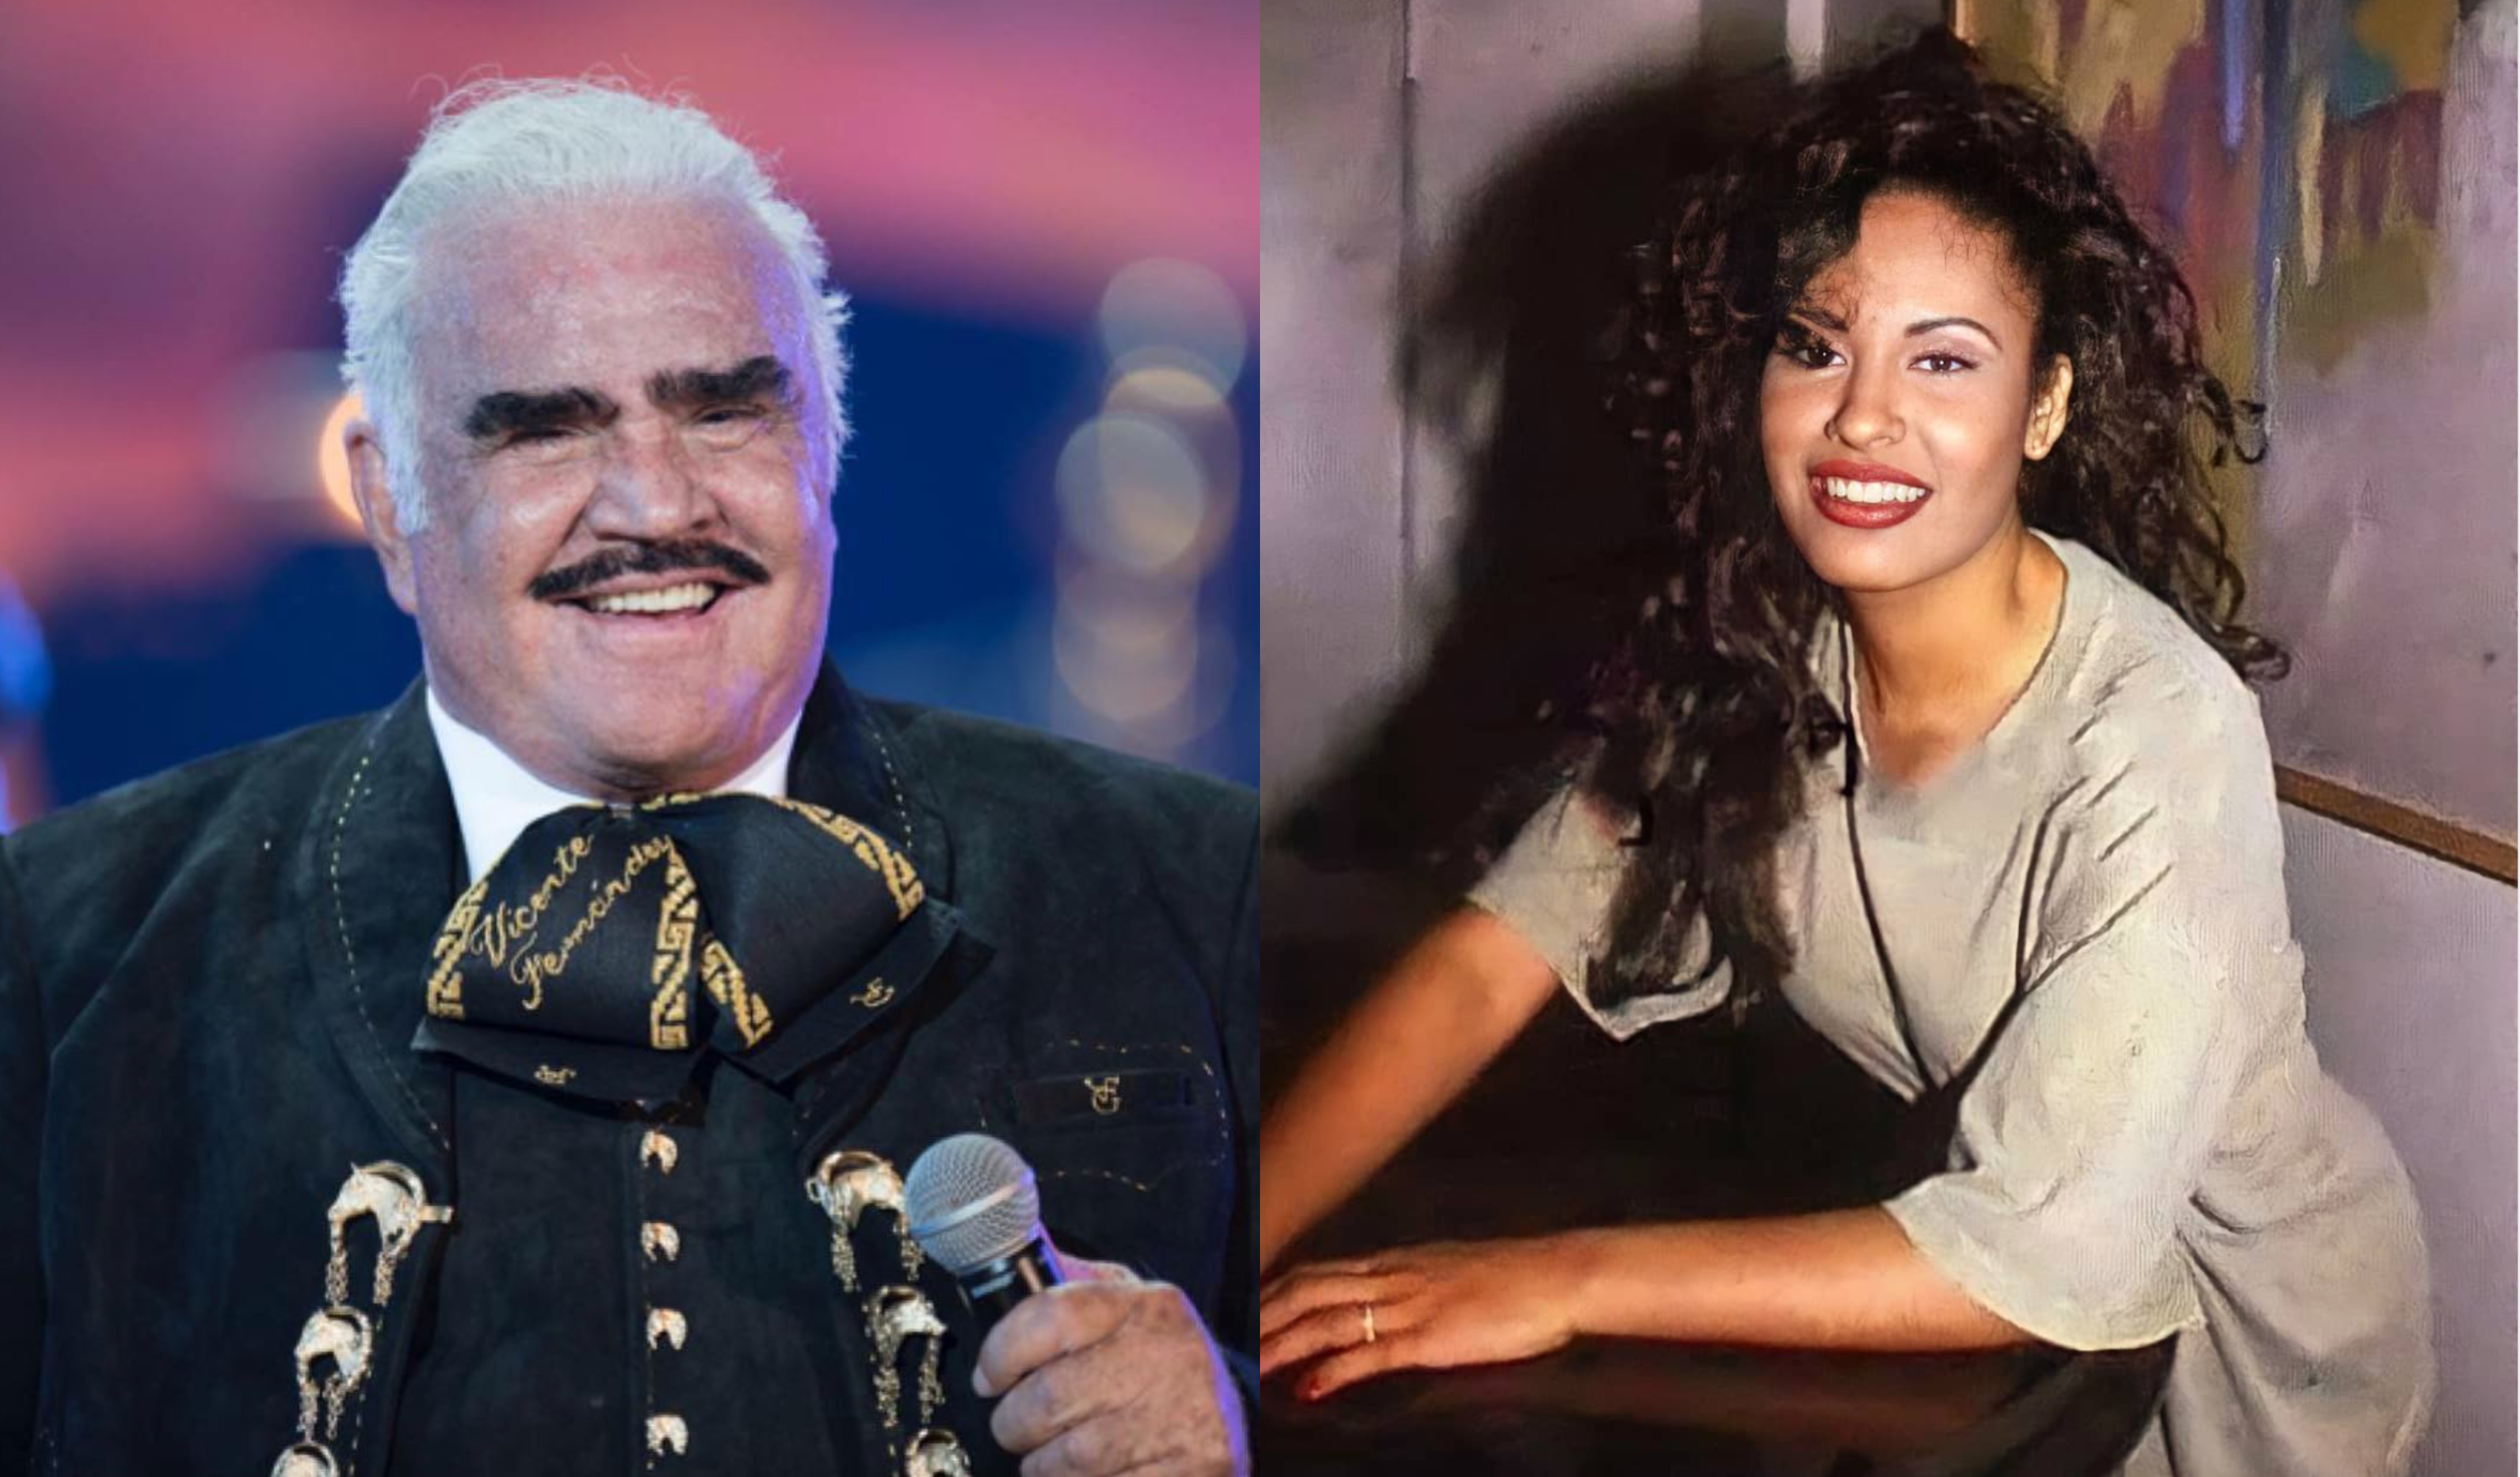 Vicente Fernández y Selena fueron dos de los músicos mexicanos más influyentes de las últimas décadas. (Foto Prensa Libre: @_vicentefdez y @selenaquintanillaperez____/Instagram)